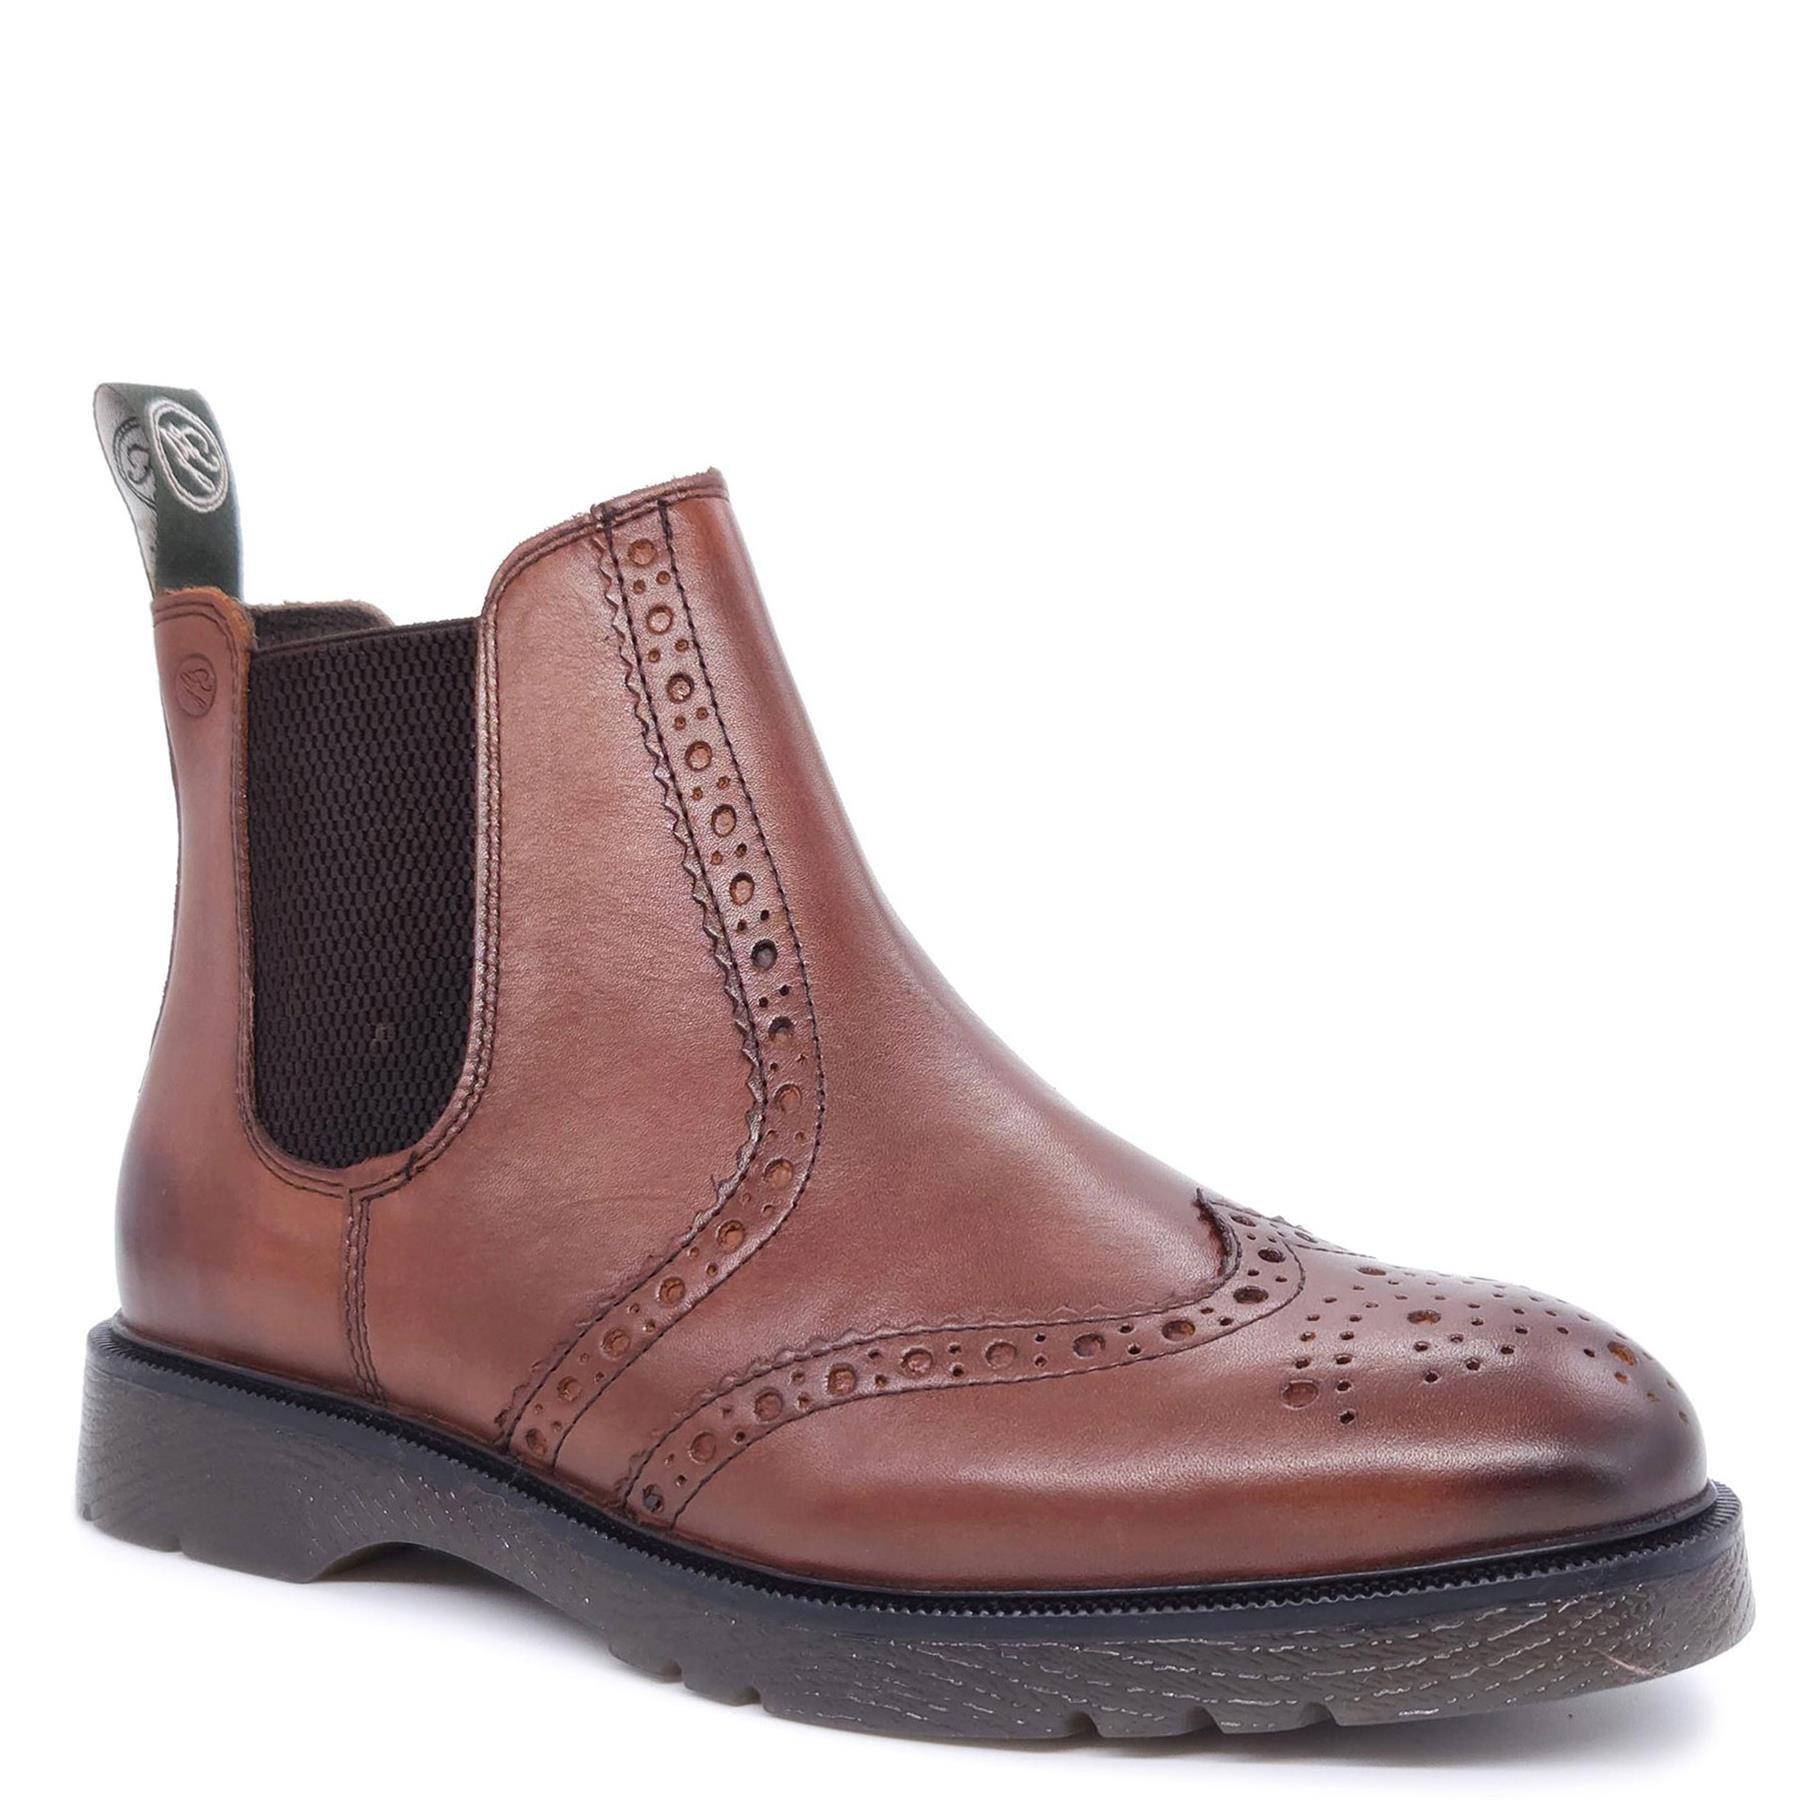 Кожаные ботинки челси с эффектом броги Warkton Frank James, коричневый кожаные броги norbury frank james коричневый